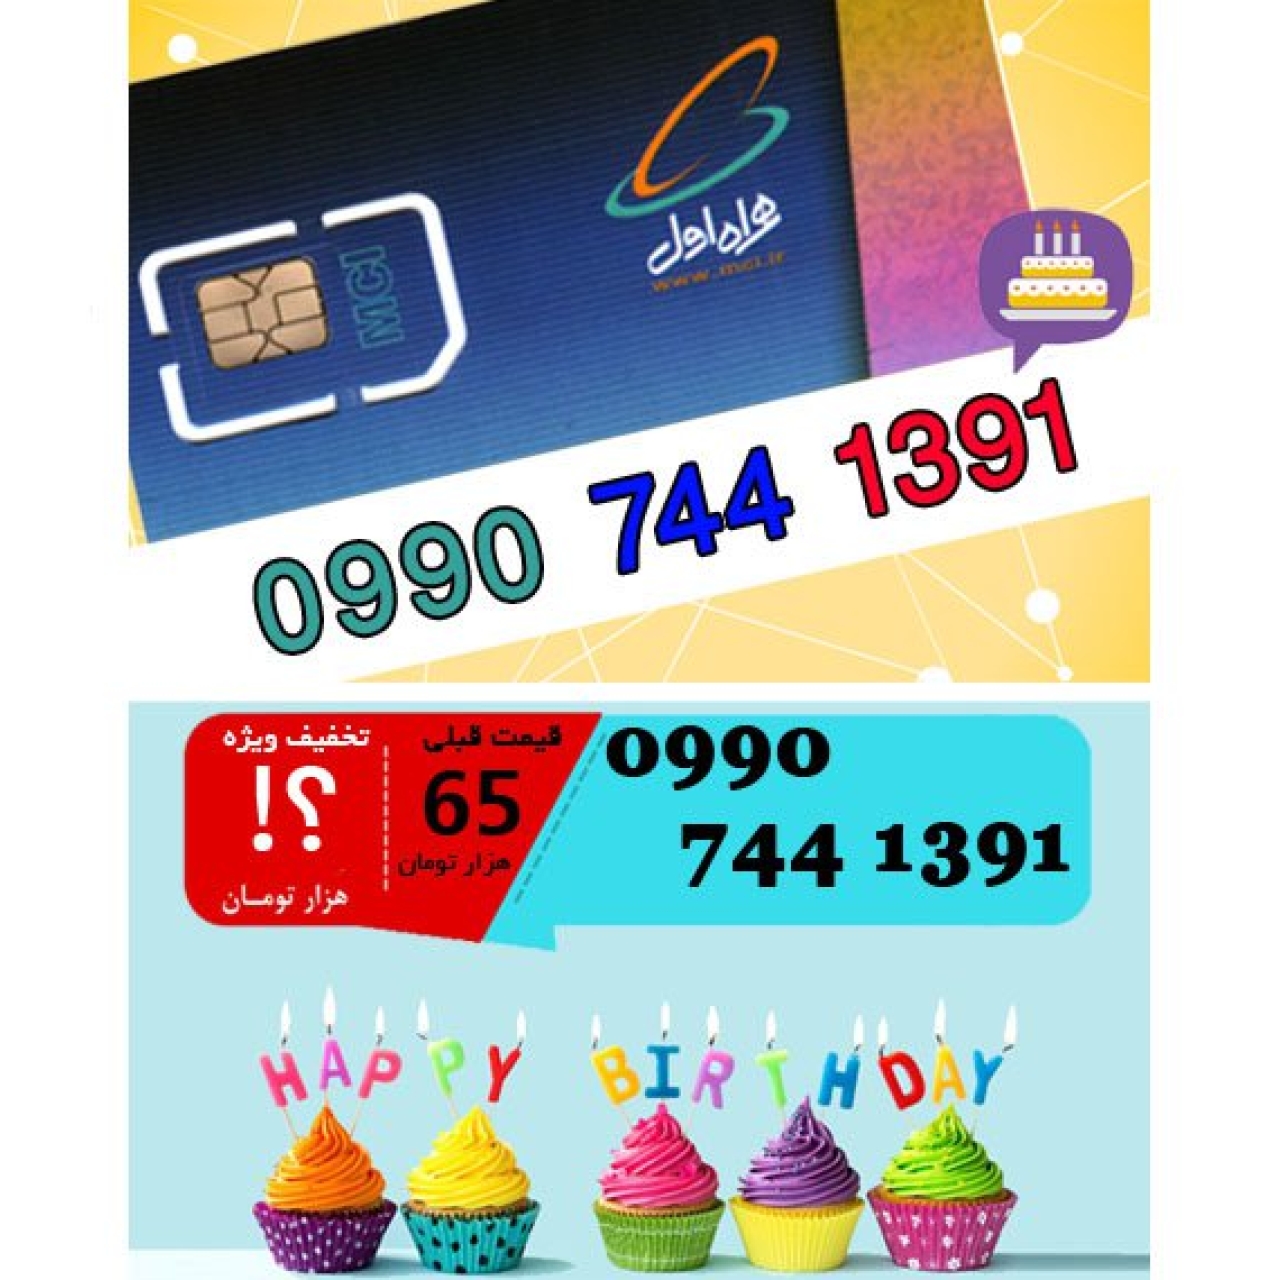 سیم کارت اعتباری همراه اول 09907441391 تاریخ تولد